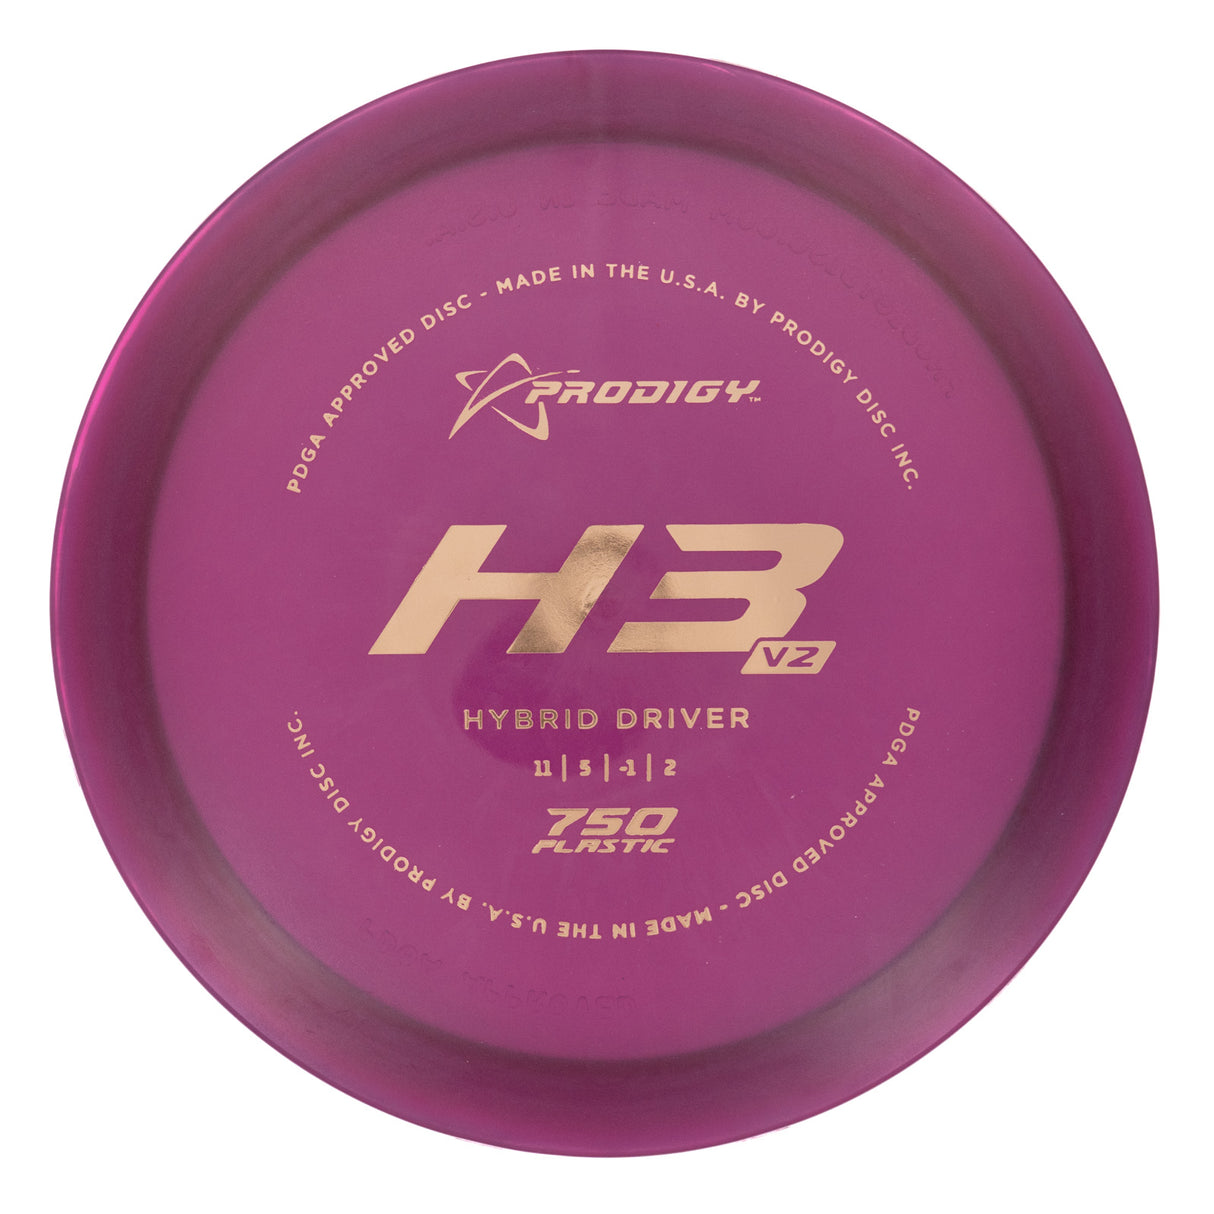 Prodigy H3 V2 - 750 175g | Style 0004